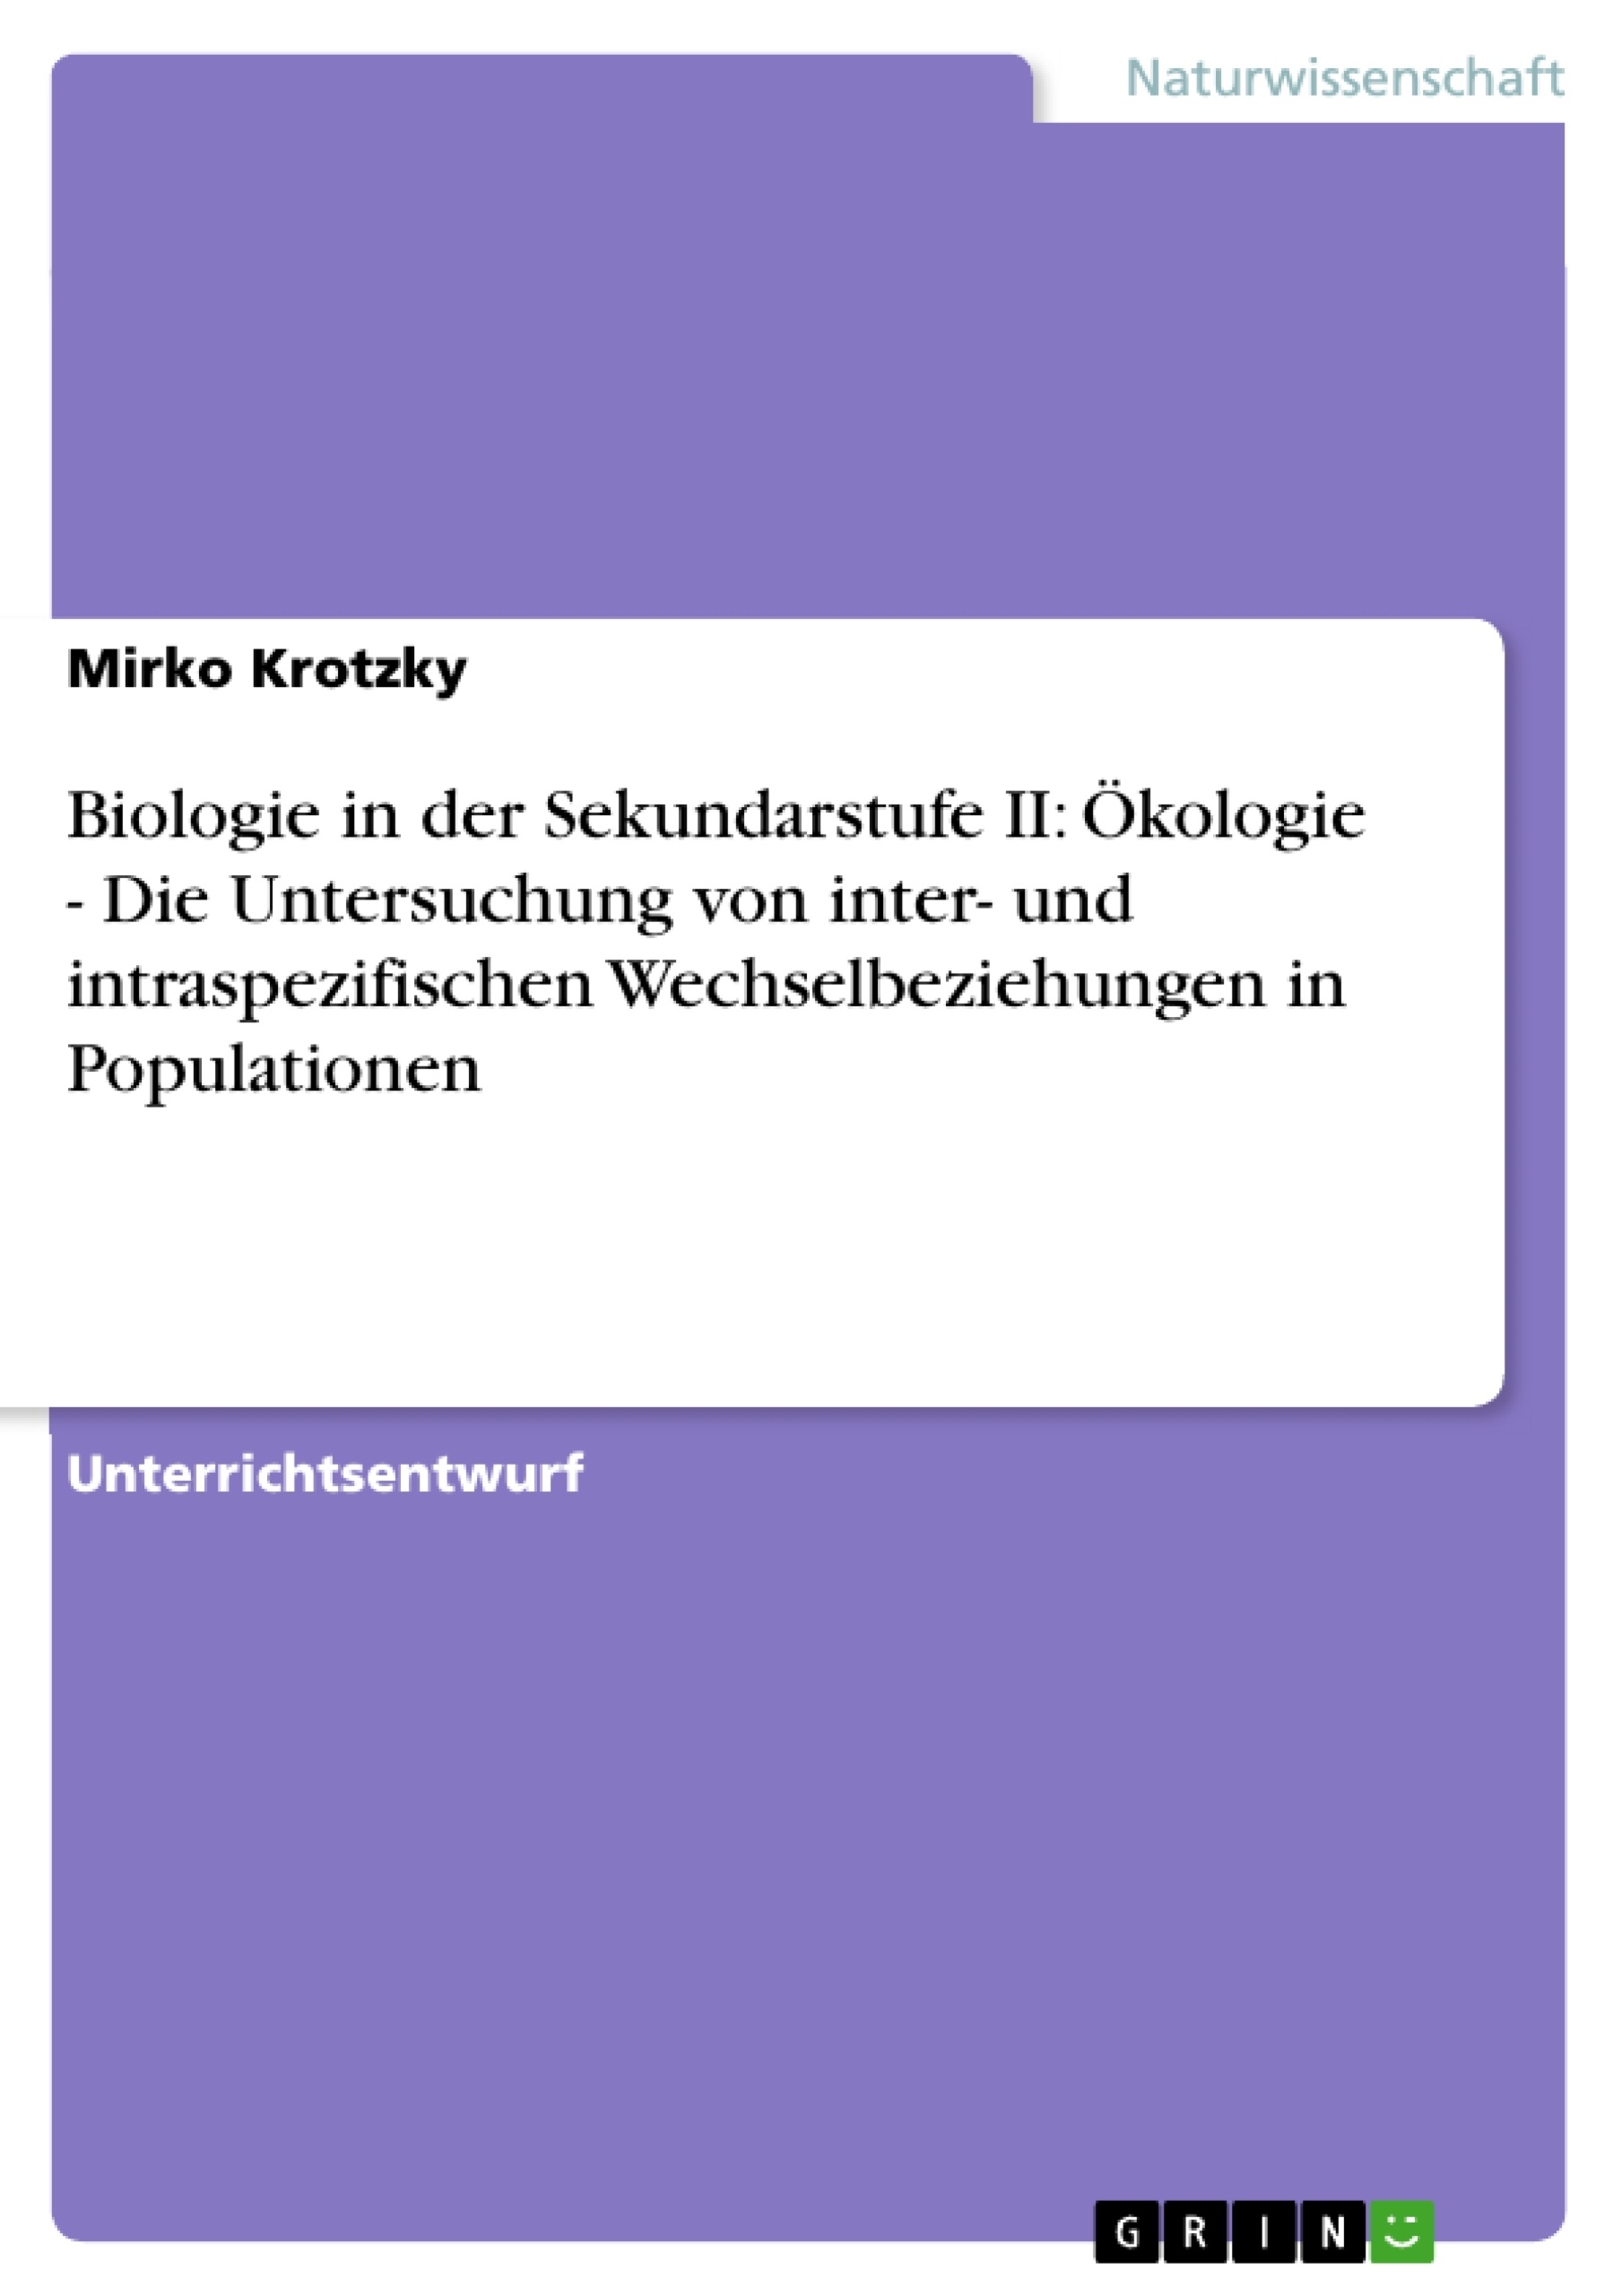 Título: Biologie in der Sekundarstufe II: Ökologie - Die Untersuchung von inter- und intraspezifischen Wechselbeziehungen in Populationen